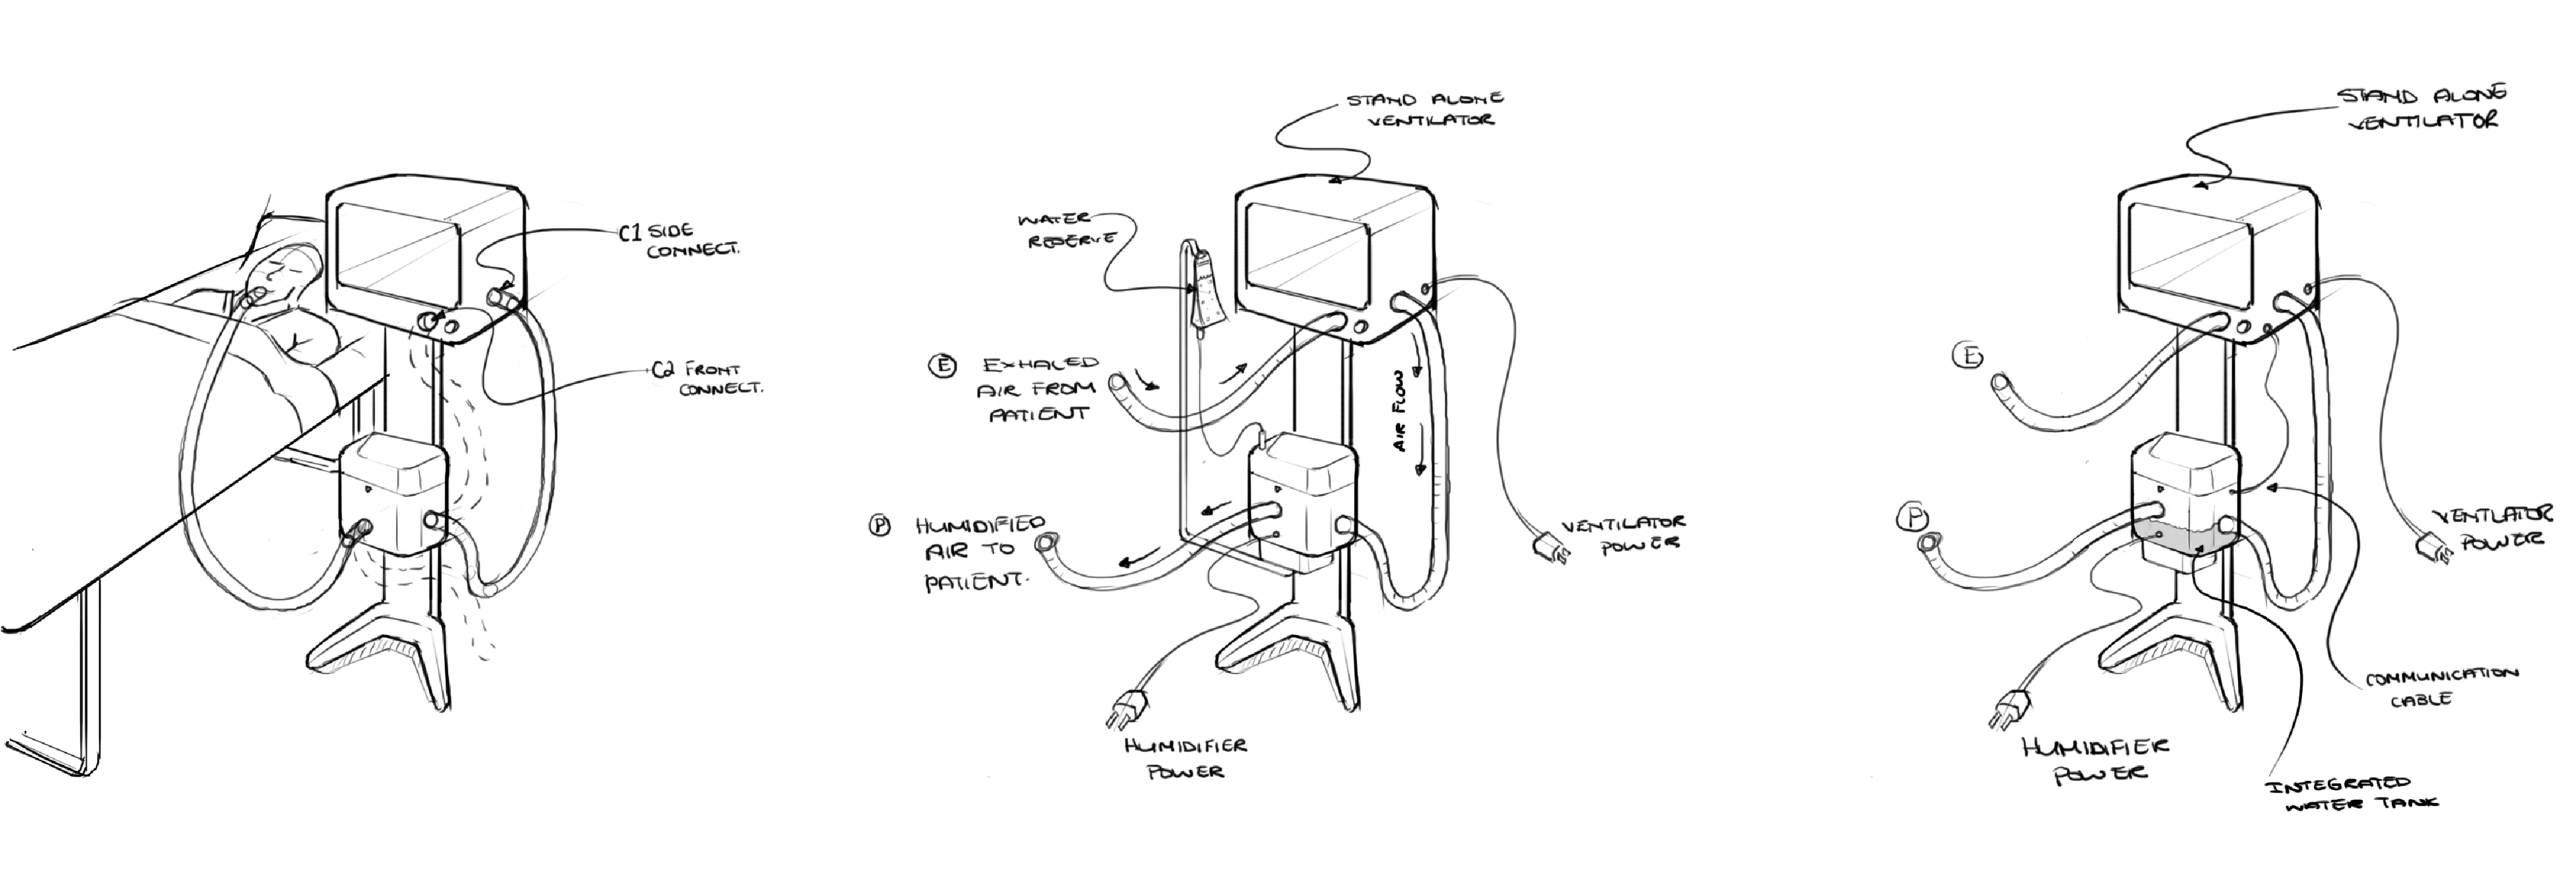 Product Sketches for preliminary design of the Hamilton C6 Ventilator